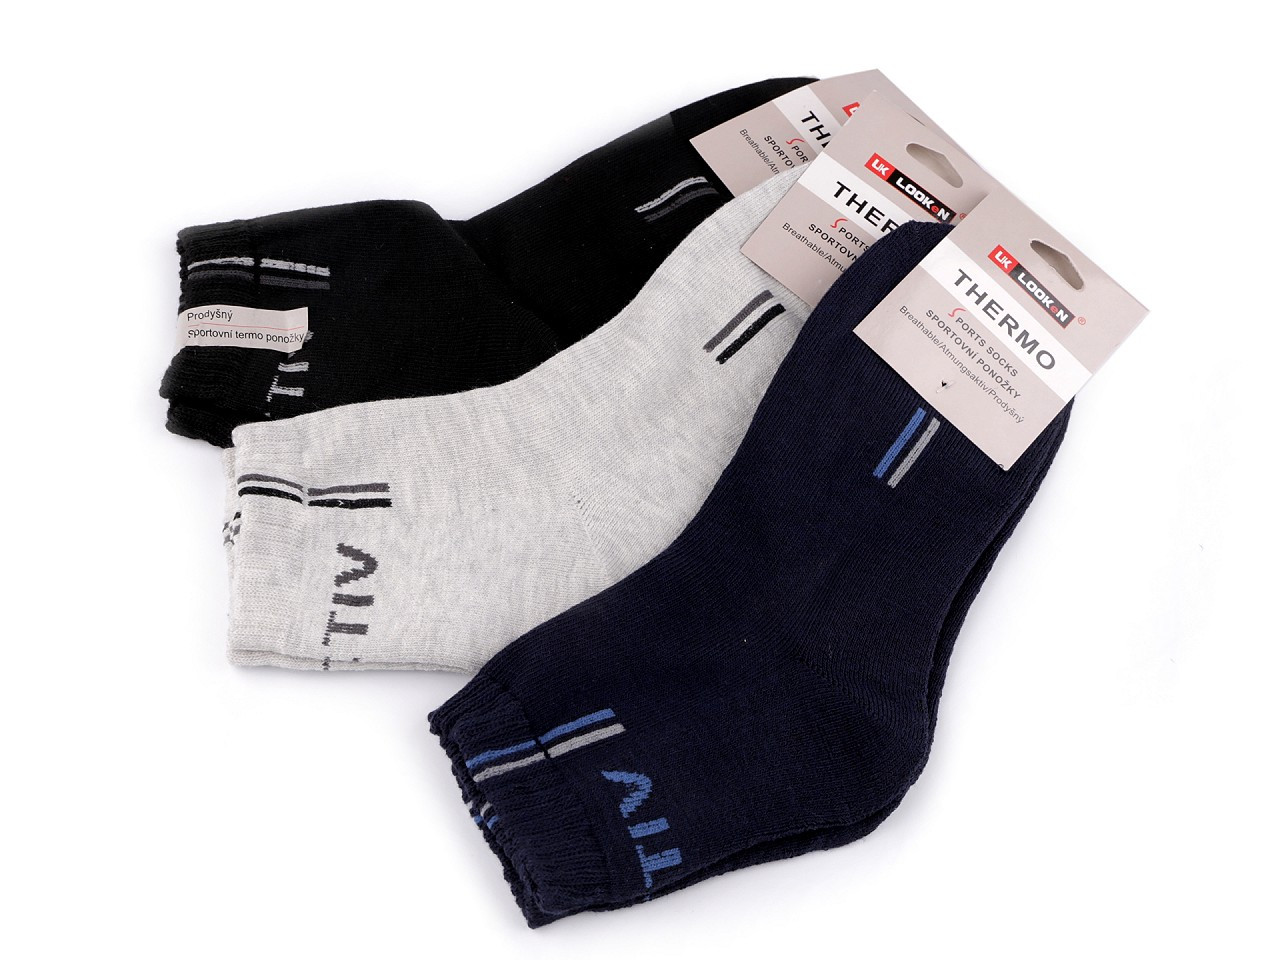 Pánské bavlněné ponožky thermo sportovní, barva 1 (vel. 39-42) mix